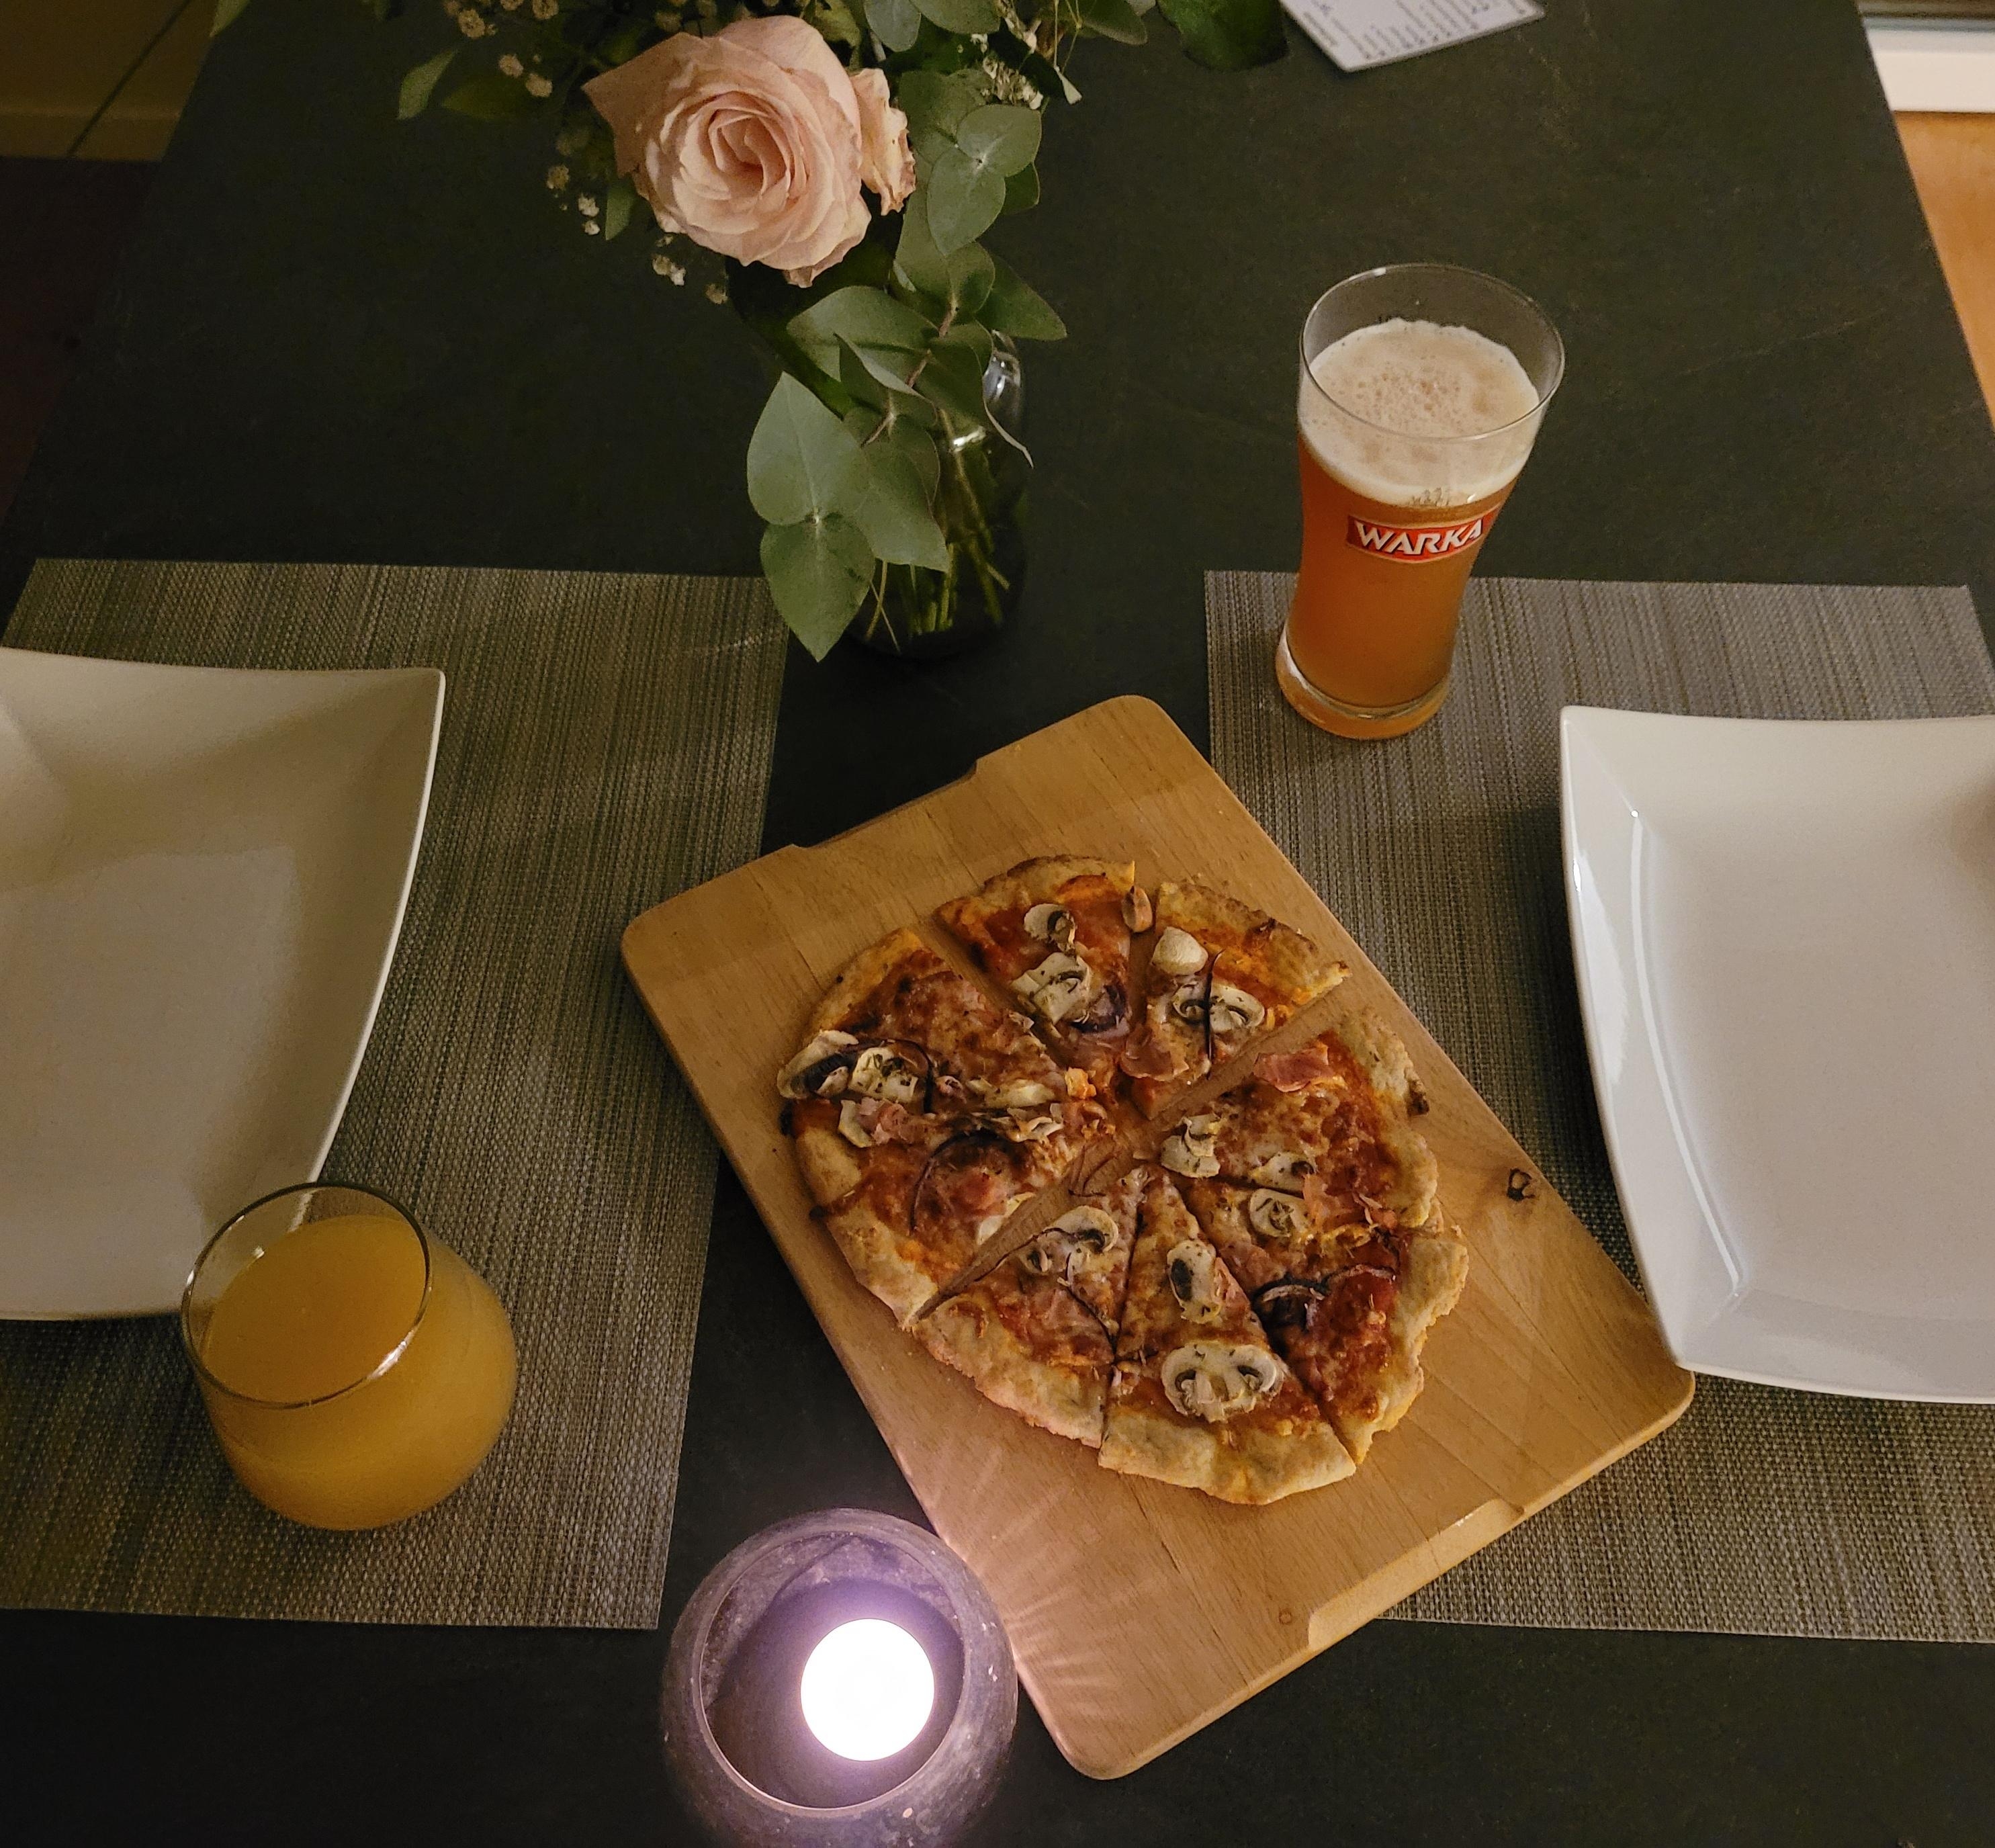 Das alte Jahr wird mit einer selbstgemachten Pizza verabschiedet!
#glutenfrei #lecker #Silvester